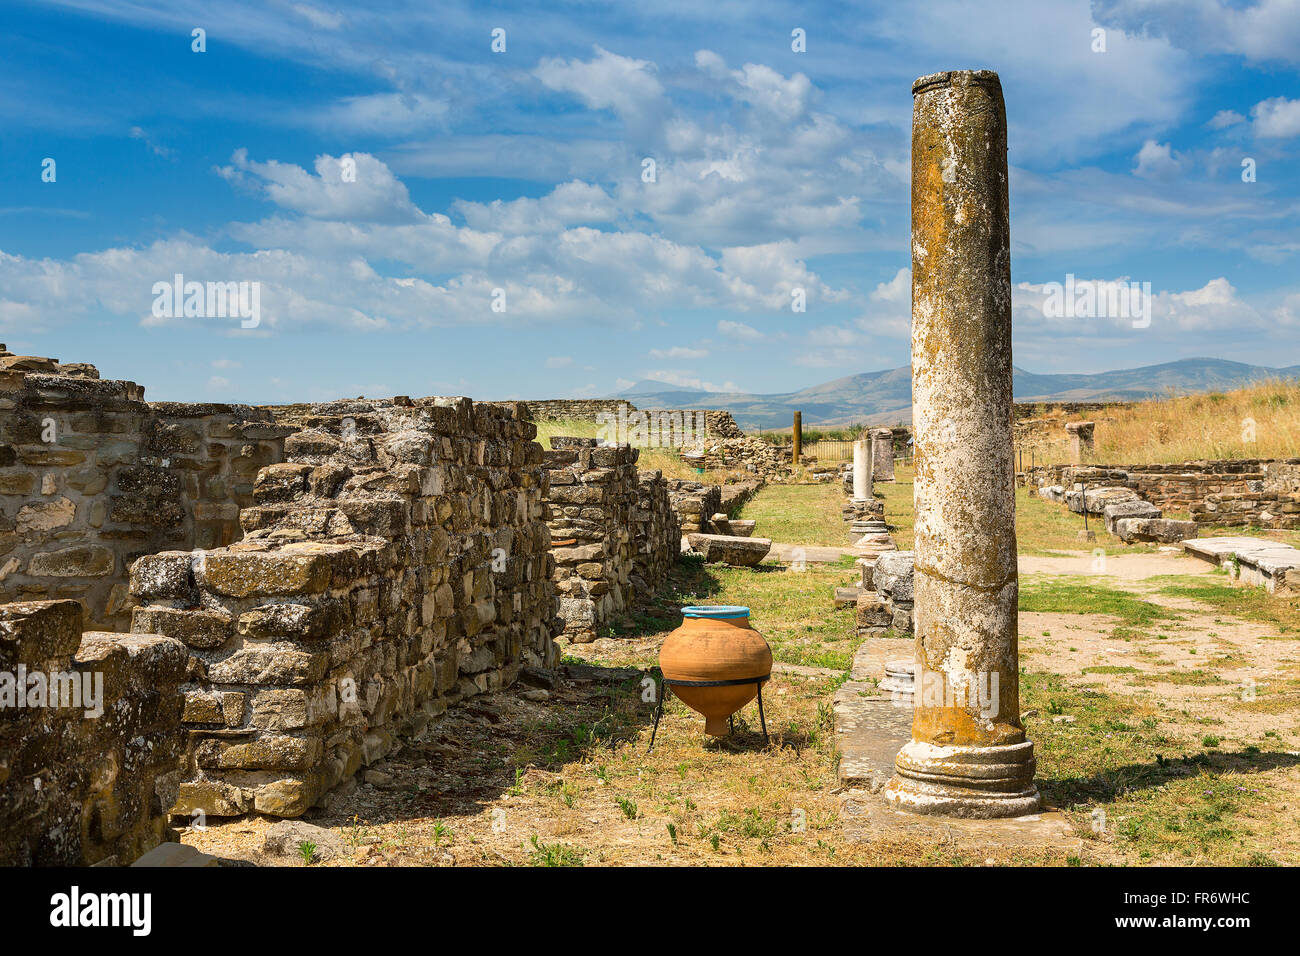 República de Macedonia, Gradsko, sitio arqueológico romano de Stobi Foto de stock